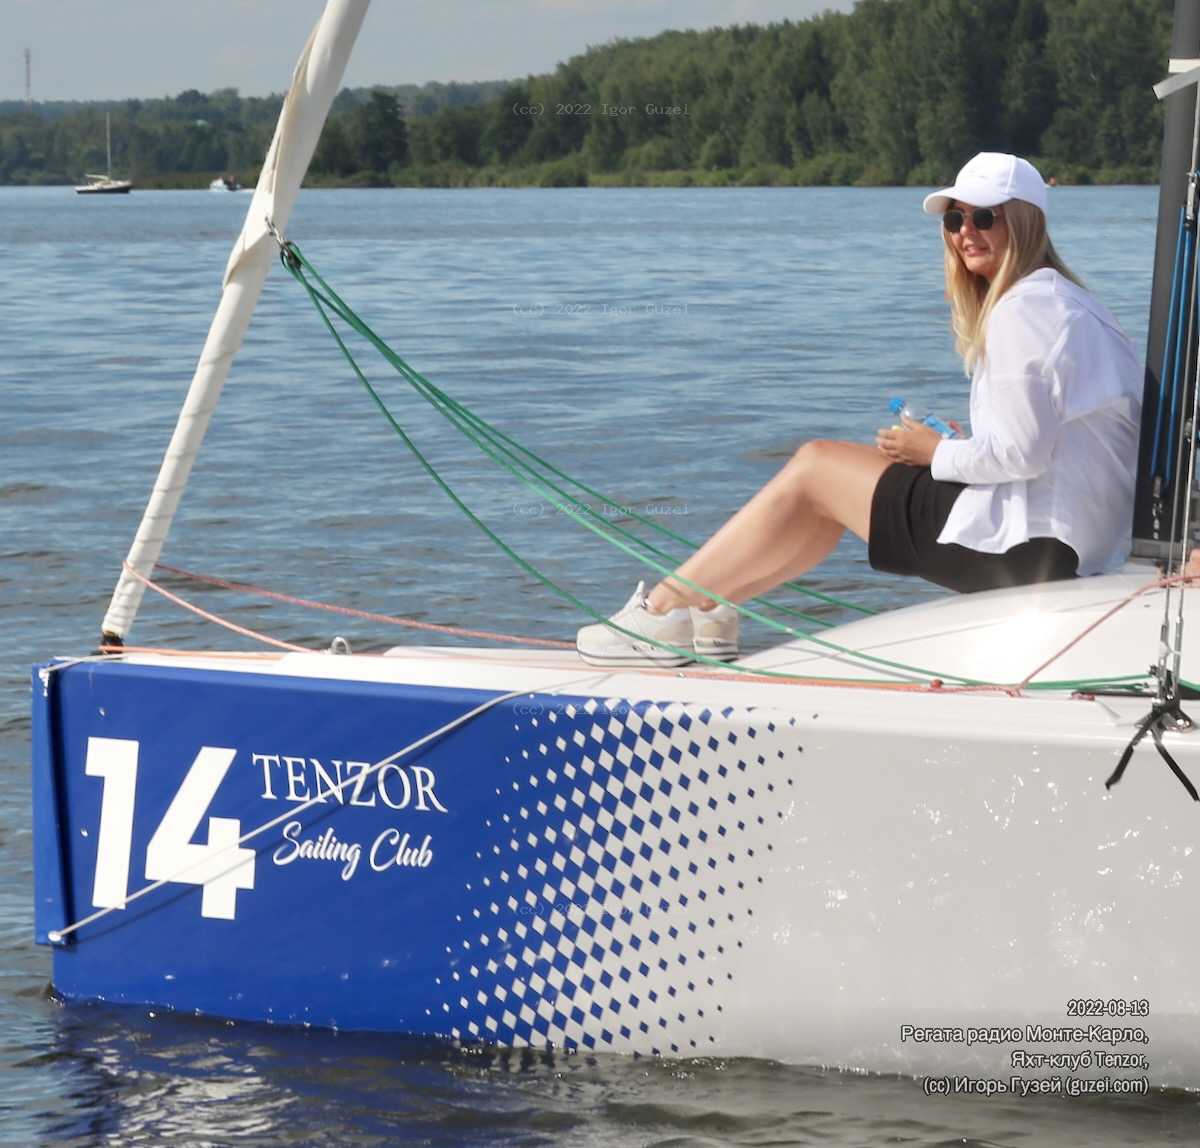 Ксения - Регата Радио Monte Carlo (Tenzor Sailing Club) 2022-08-13 15:25:15